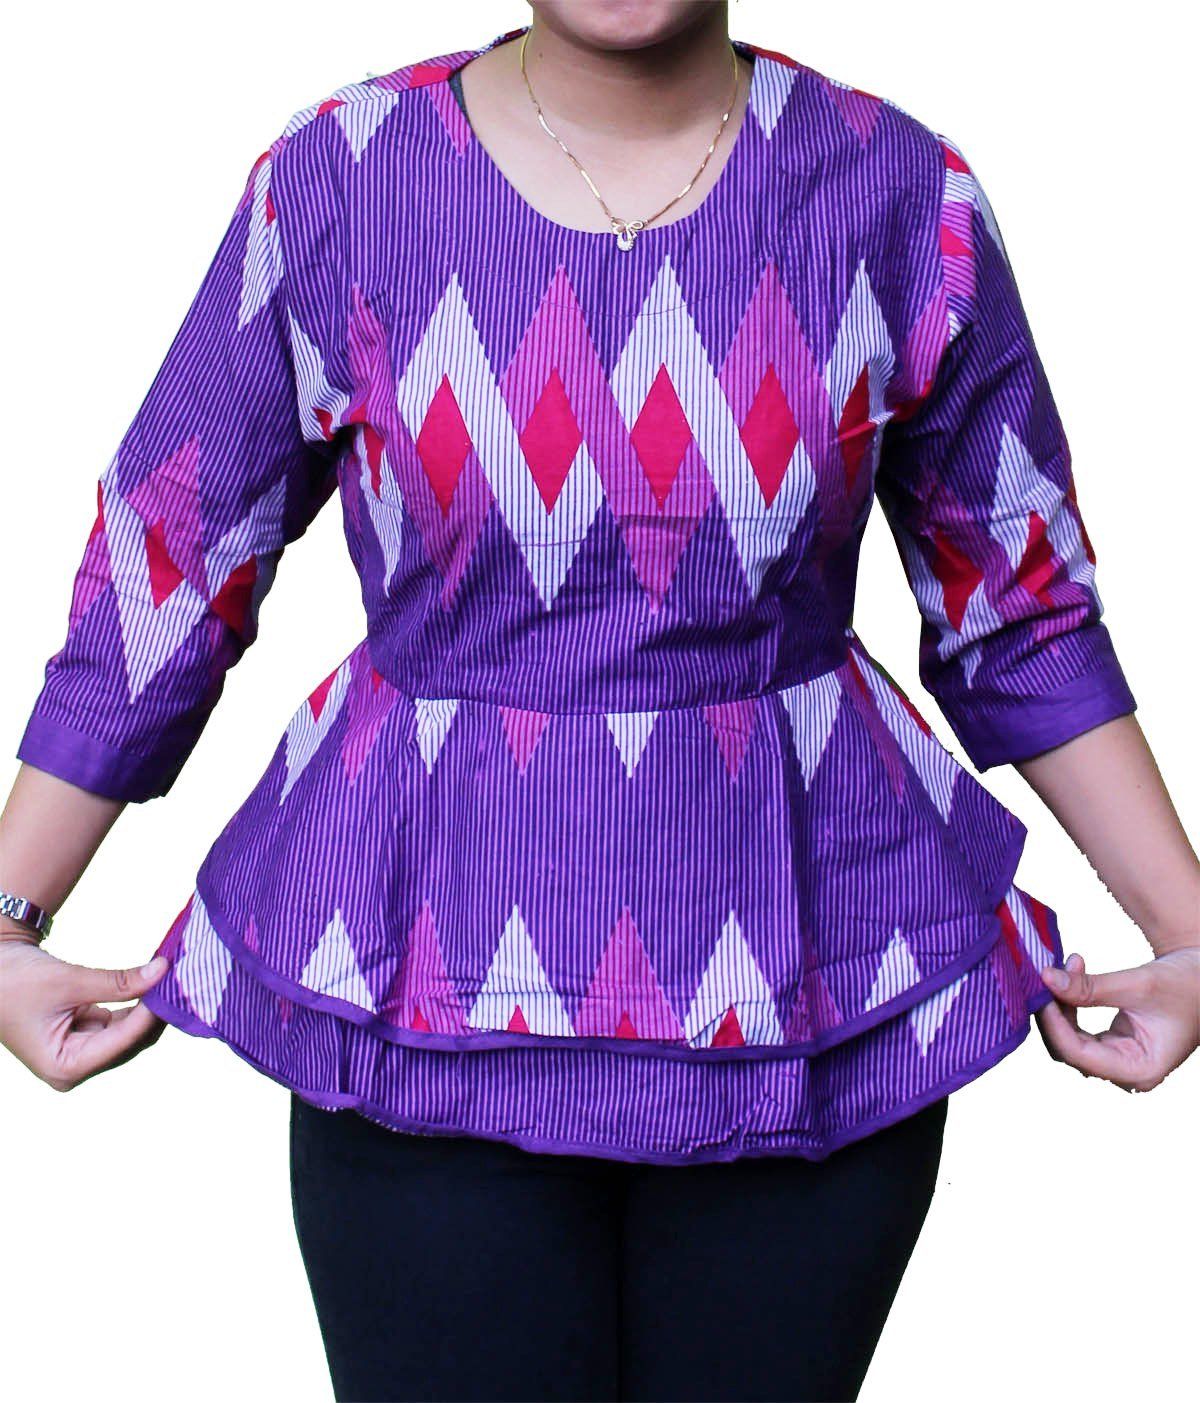 20 Model Baju Batik Wanita Gemuk Modis Untuk Kerja Terbaru